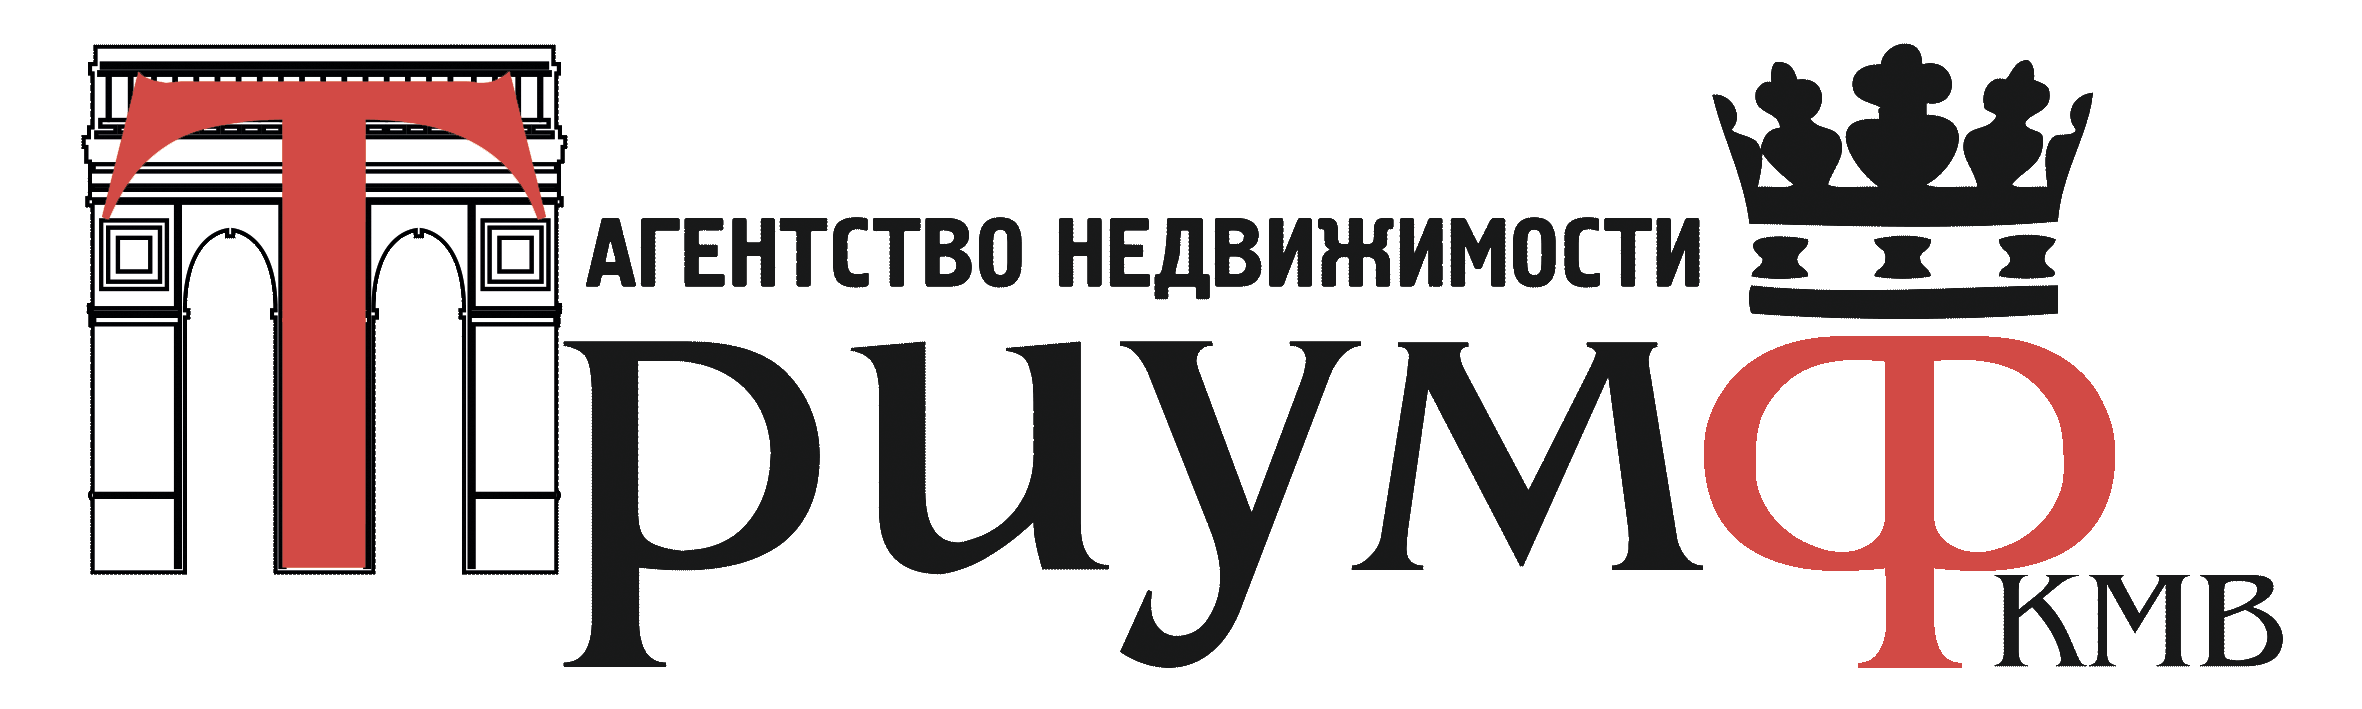 Агентство недвижимости "Триумф КМВ"  Пятигорск